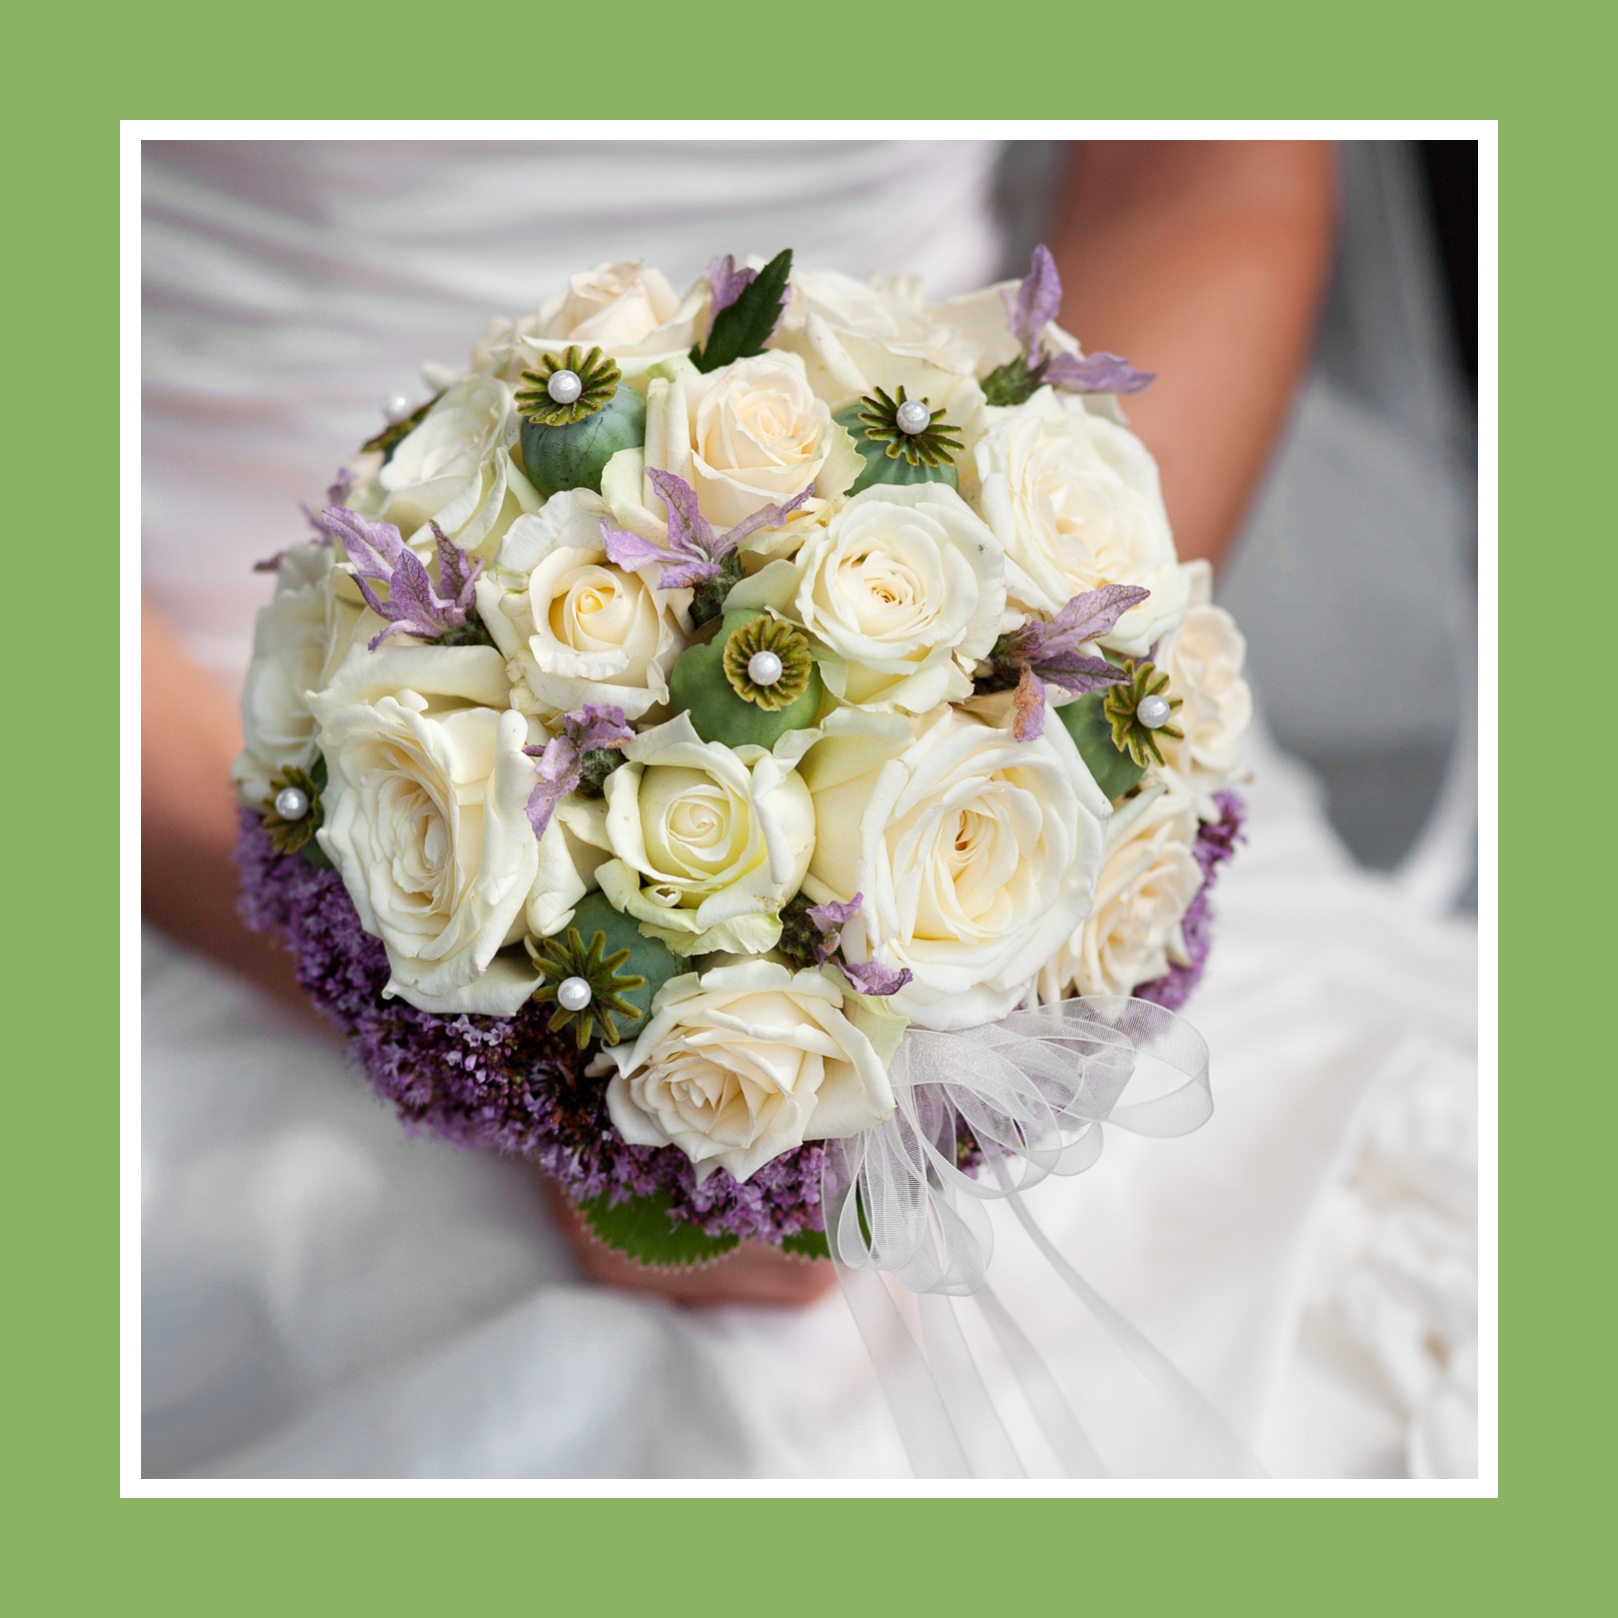 Brautstrauß aus Rosen, Flieder & Irisen in Weiß und Violett